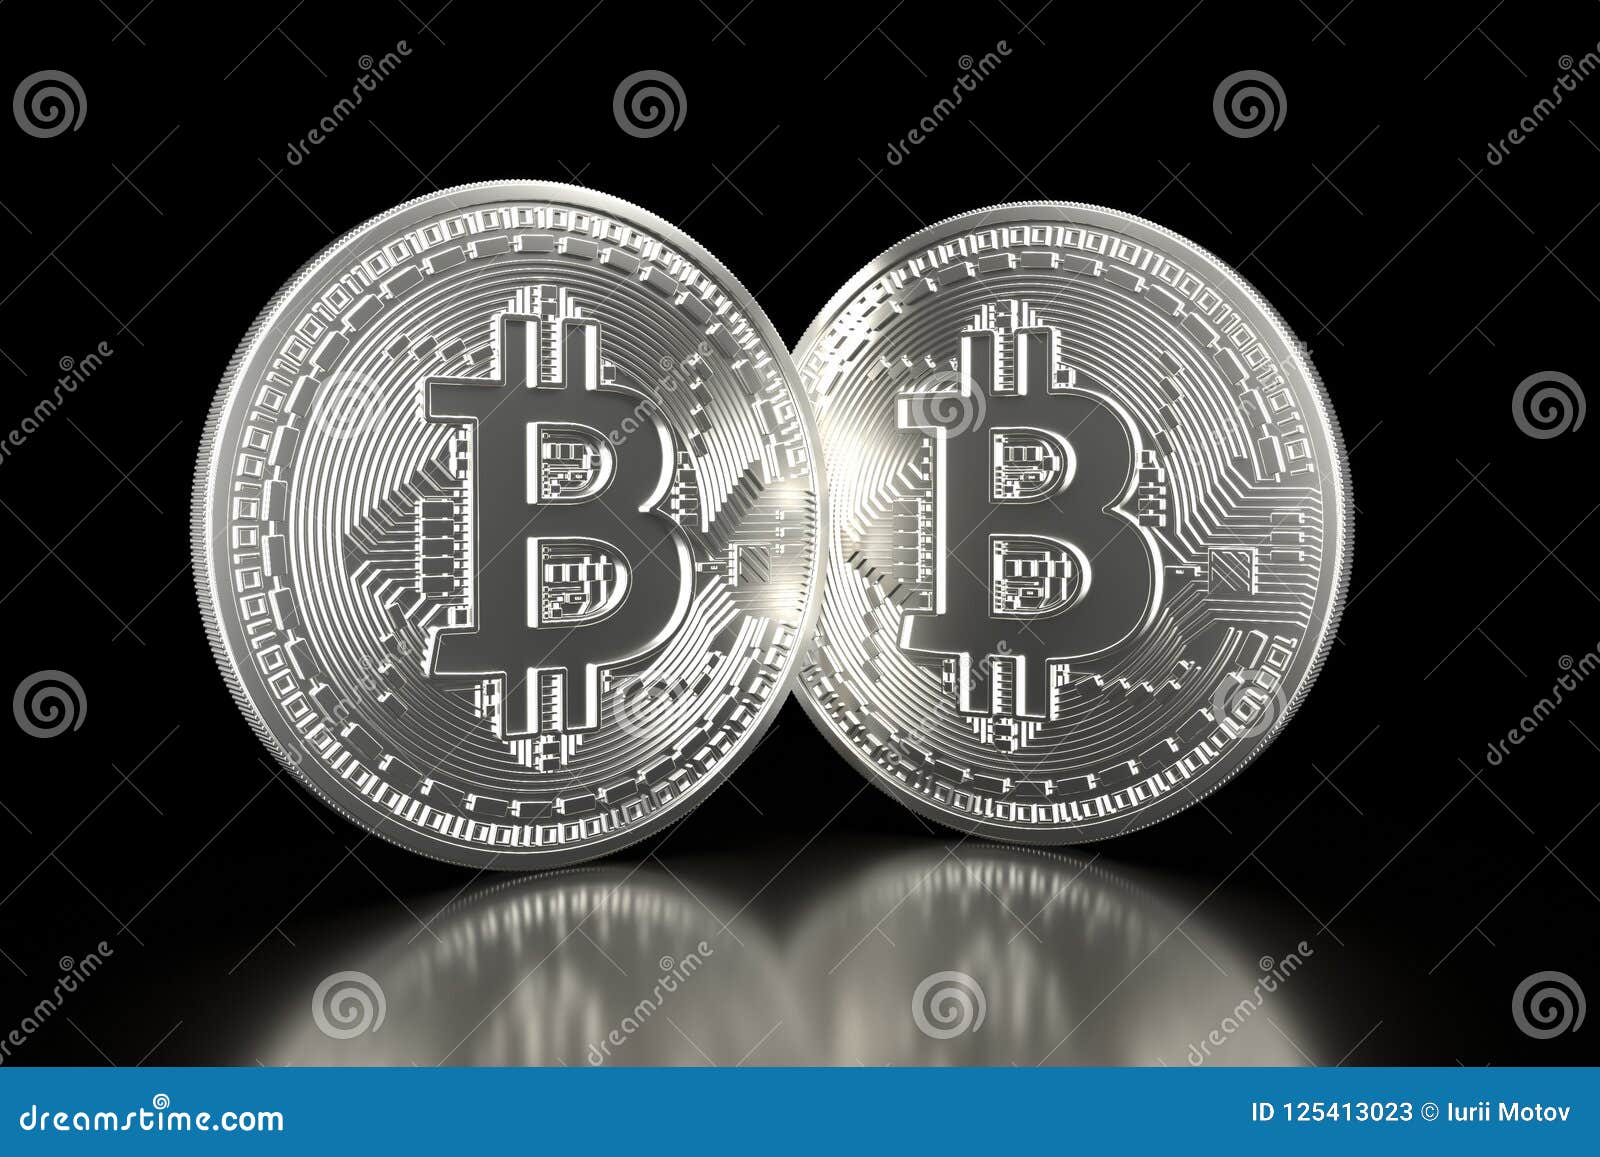 plata bitcoin apa itu bitcoin trader